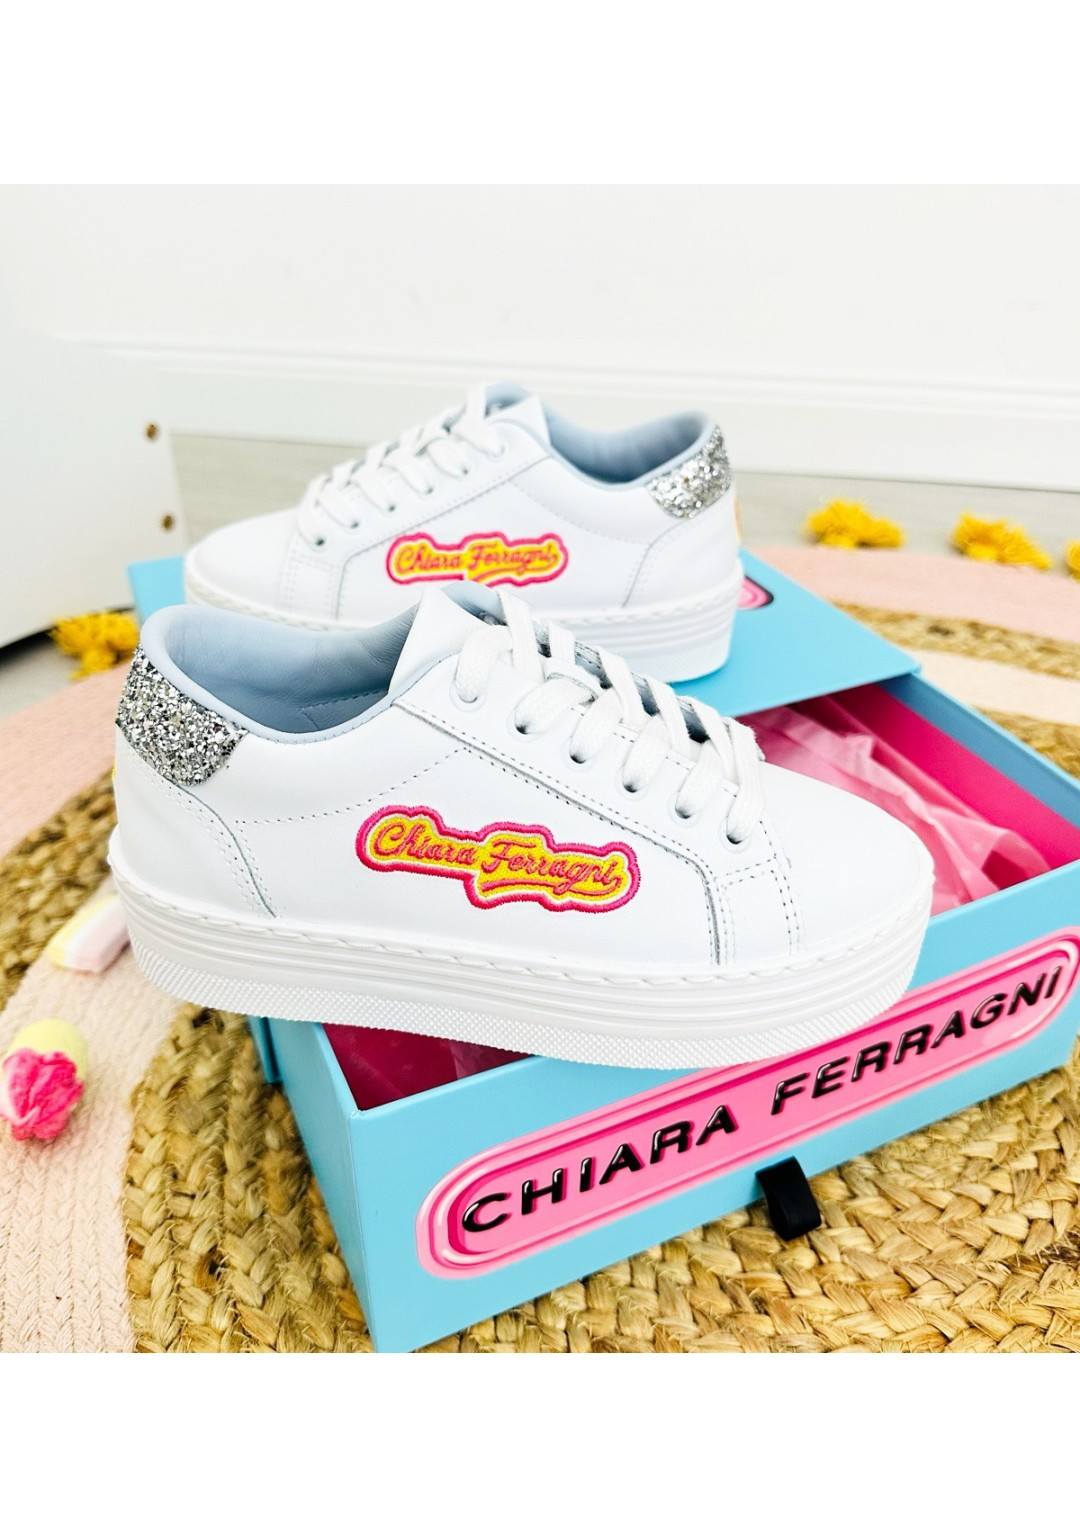 Chiara Ferragni - Sneaker Rip.Glitter - Bambine e ragazze - CFB211-064